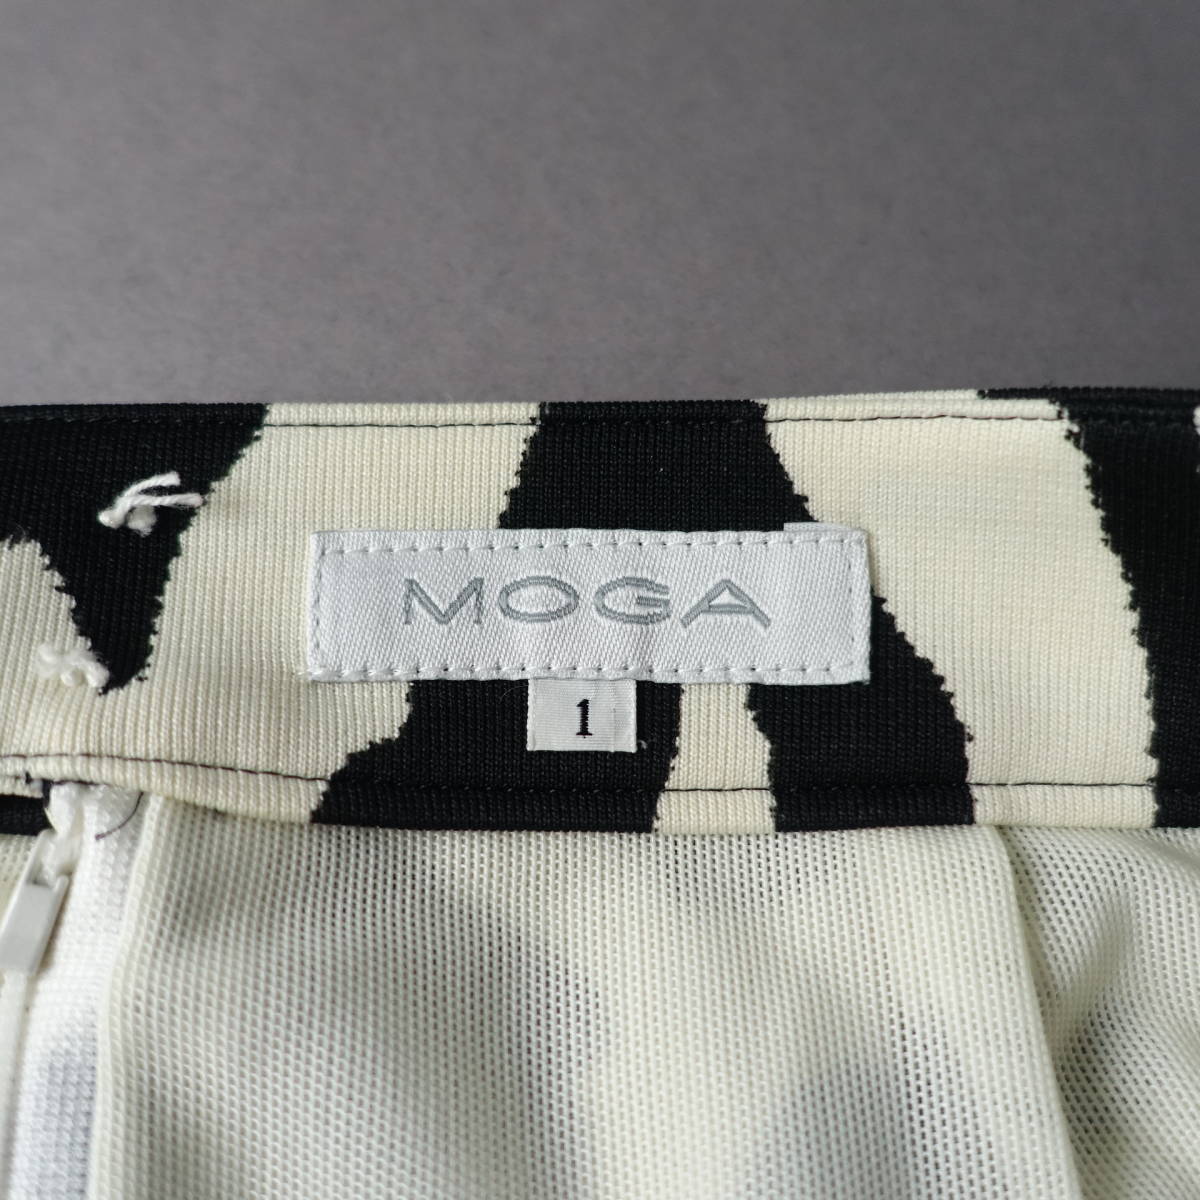 MOGA/ Moga /1/ made in Japan / tight skirt / white × black / white × black / lady's 